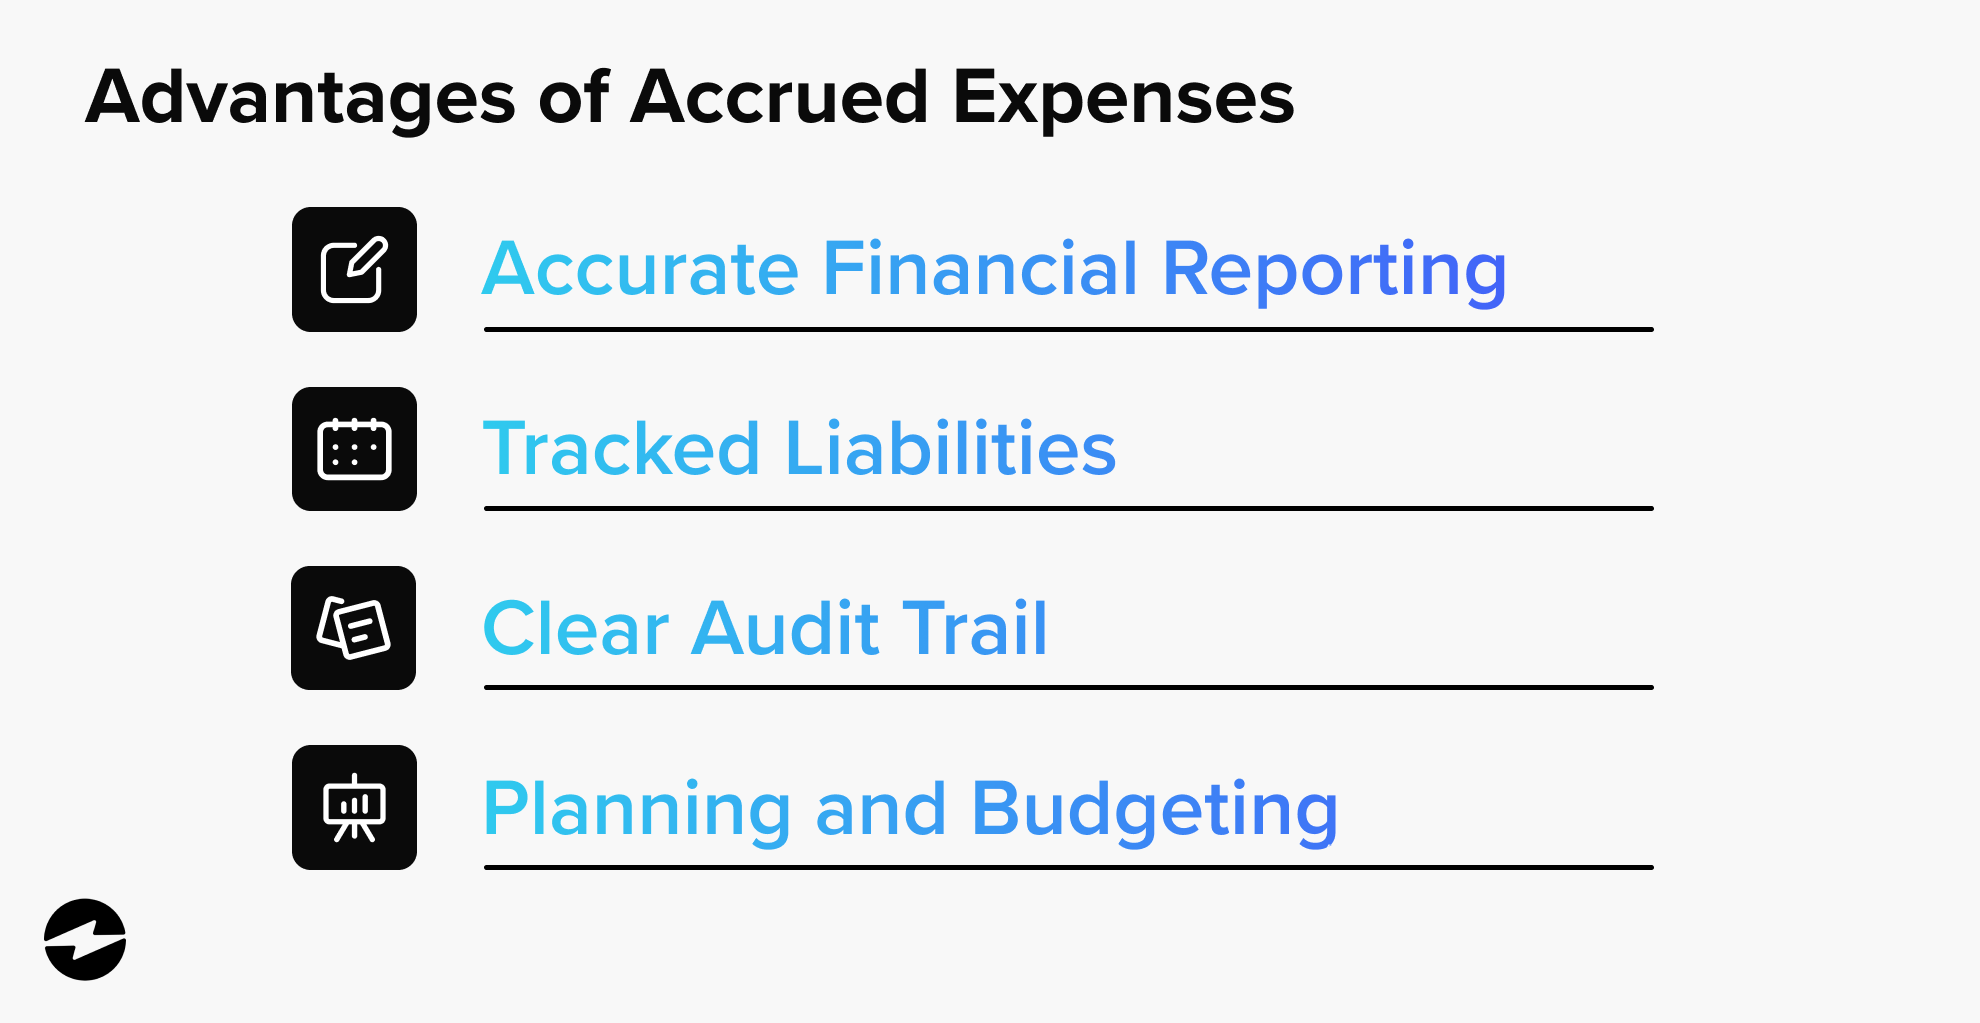 Advantages of accrued expenses